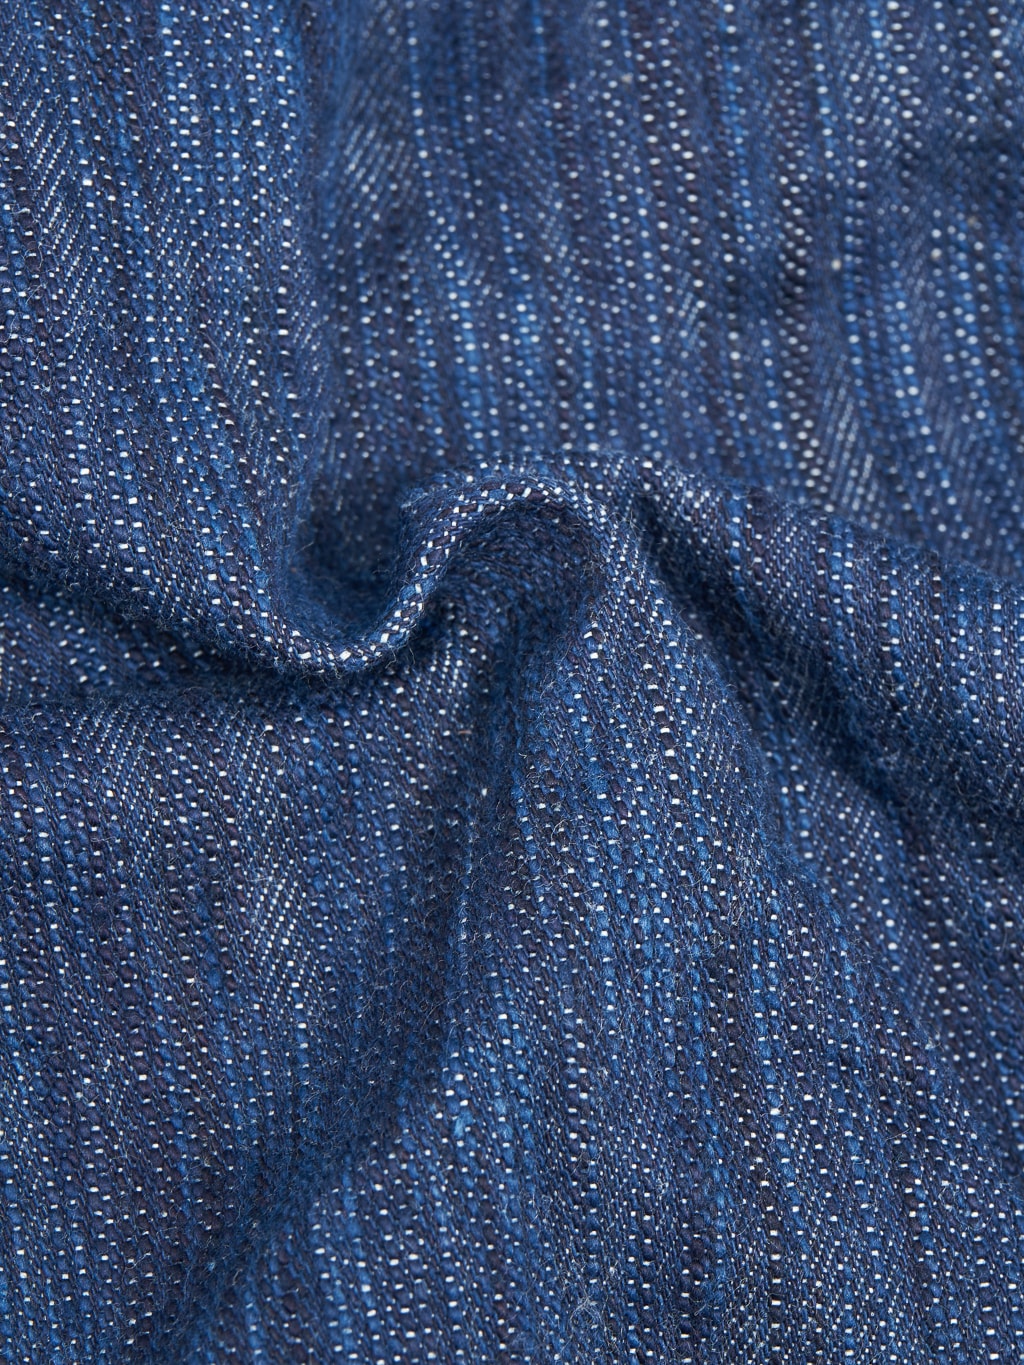 Studio Dartisan Tokushima Awa Shoai Type II indigo jacket cotton fabric